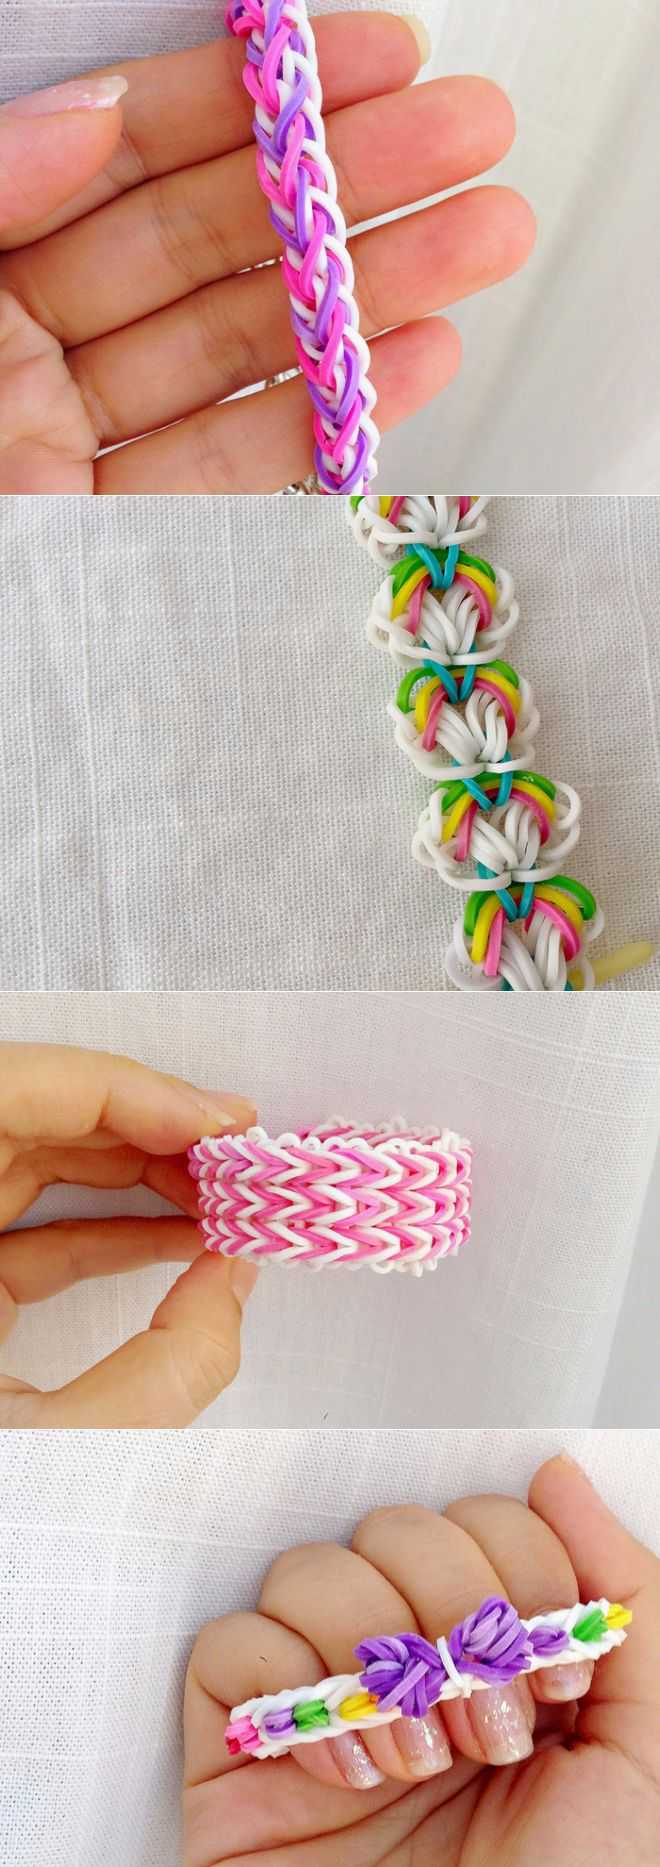 Схемы плетения браслетов из резинок – инструкции, идеи и советы как сделать стильное украшение (115 фото)